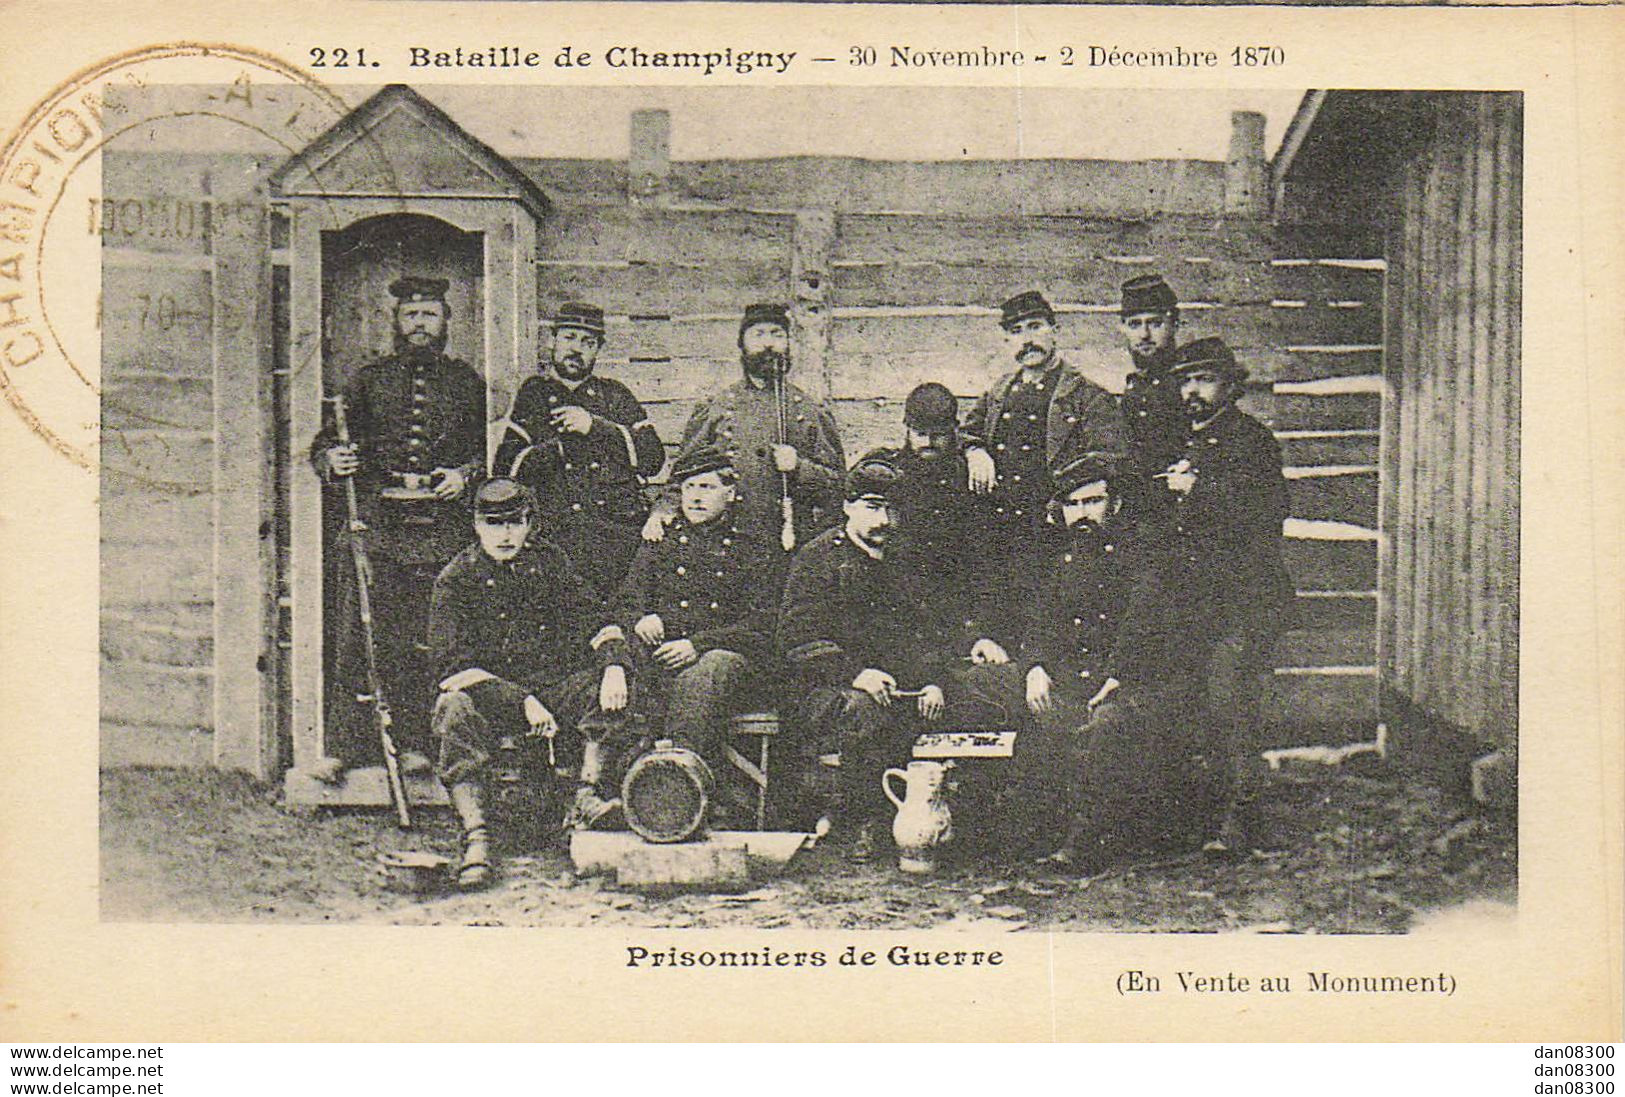 94 BATAILLE DE CHAMPIGNY 30 NOVEMBRE 2 DECEMBRE 1870 PRISONNIERS DE GUERRE - Other Wars